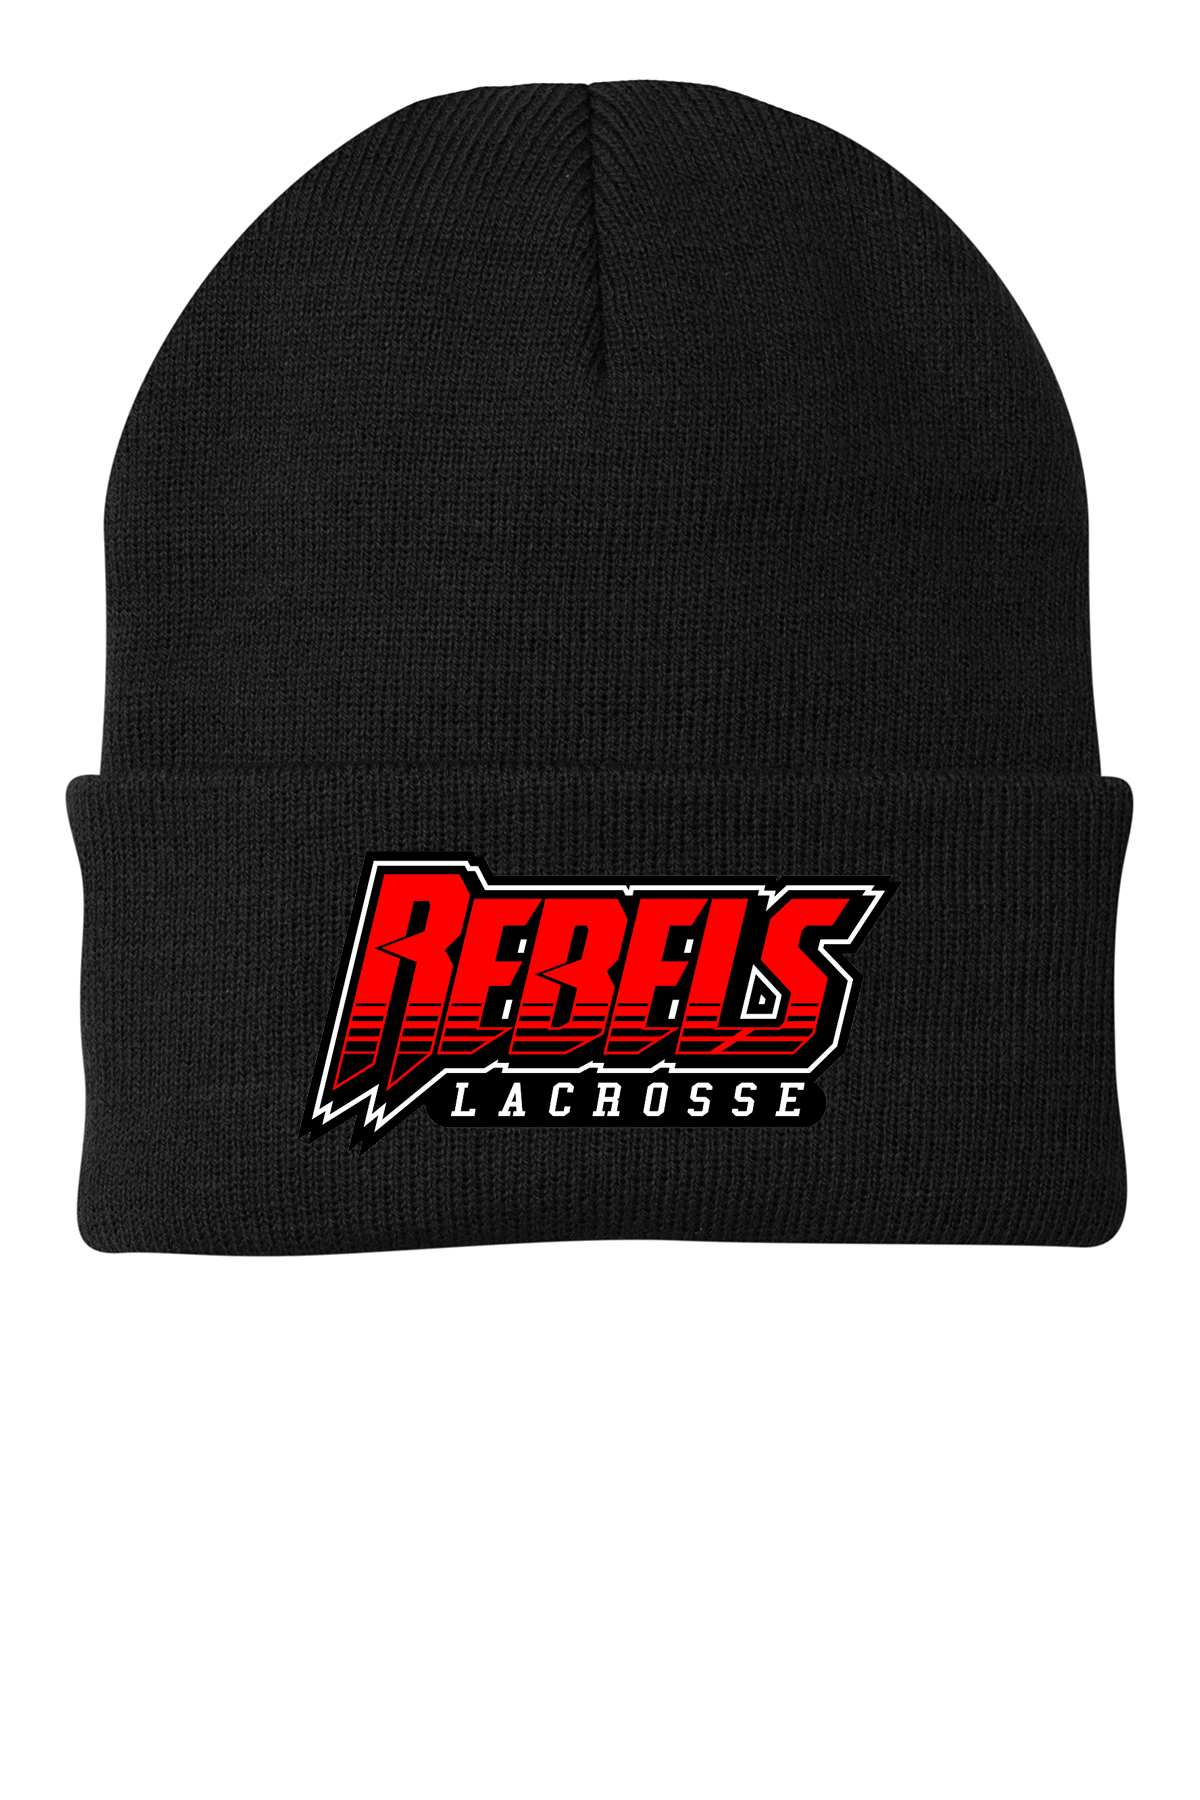 Rebels Lacrosse Knit Beanie